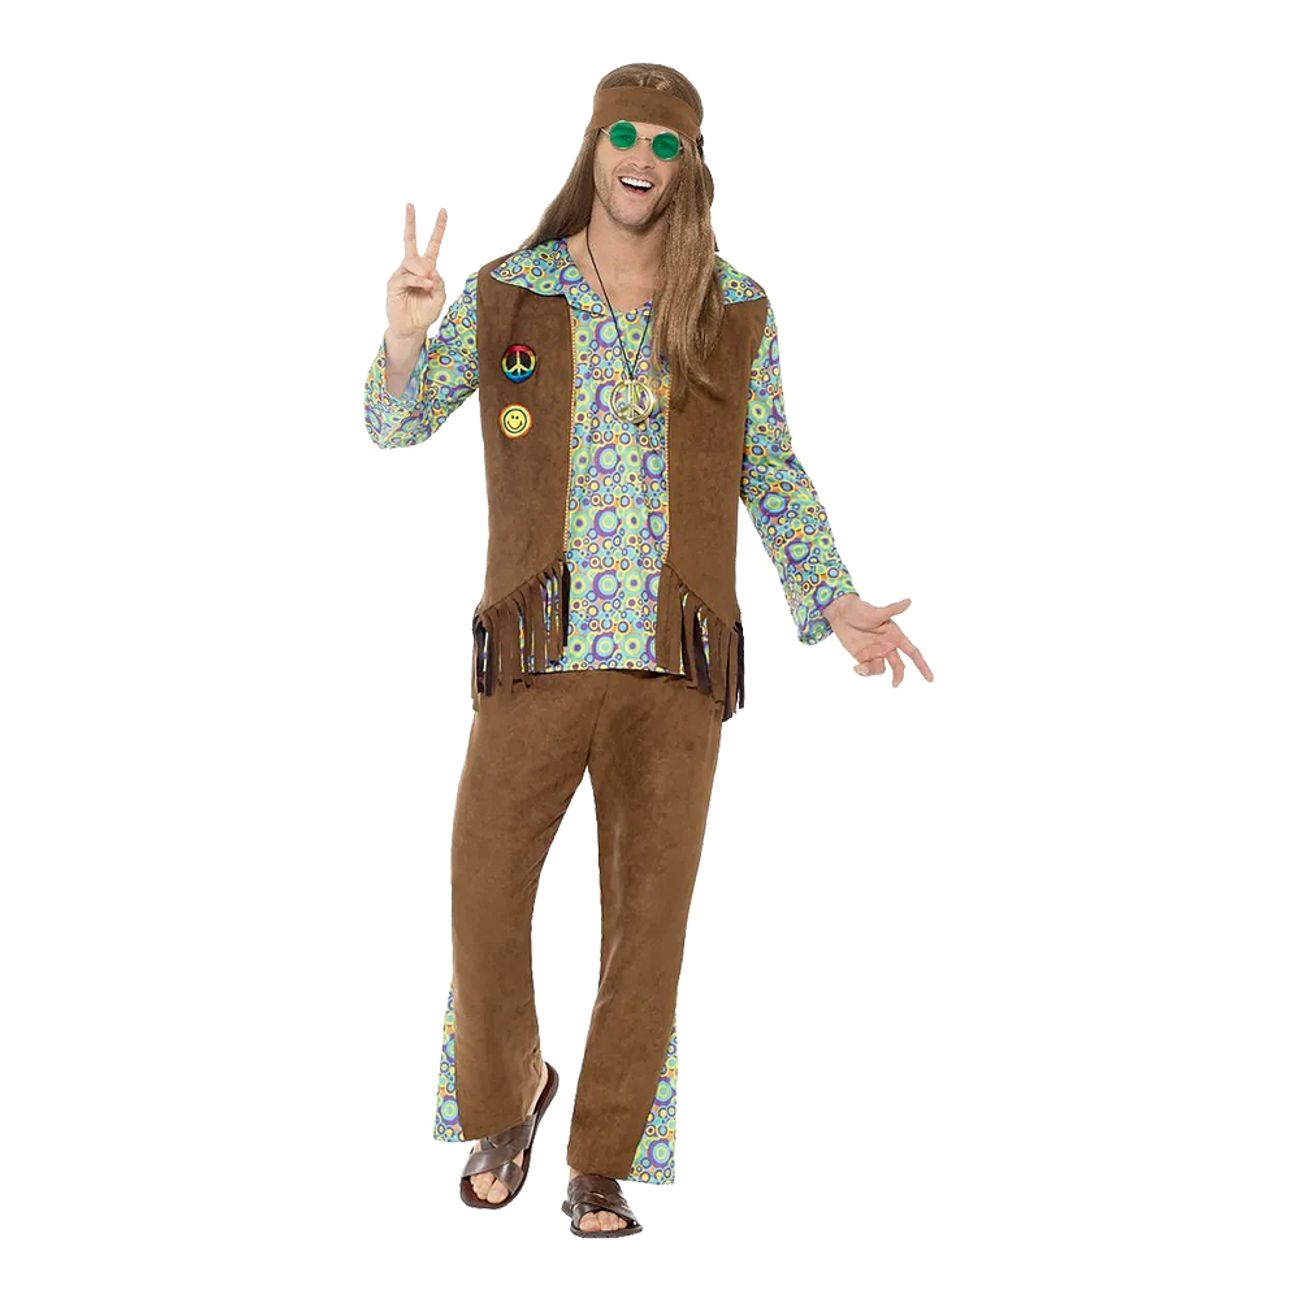 60-tals-hippie-dude-maskeraddrakt-89130-1